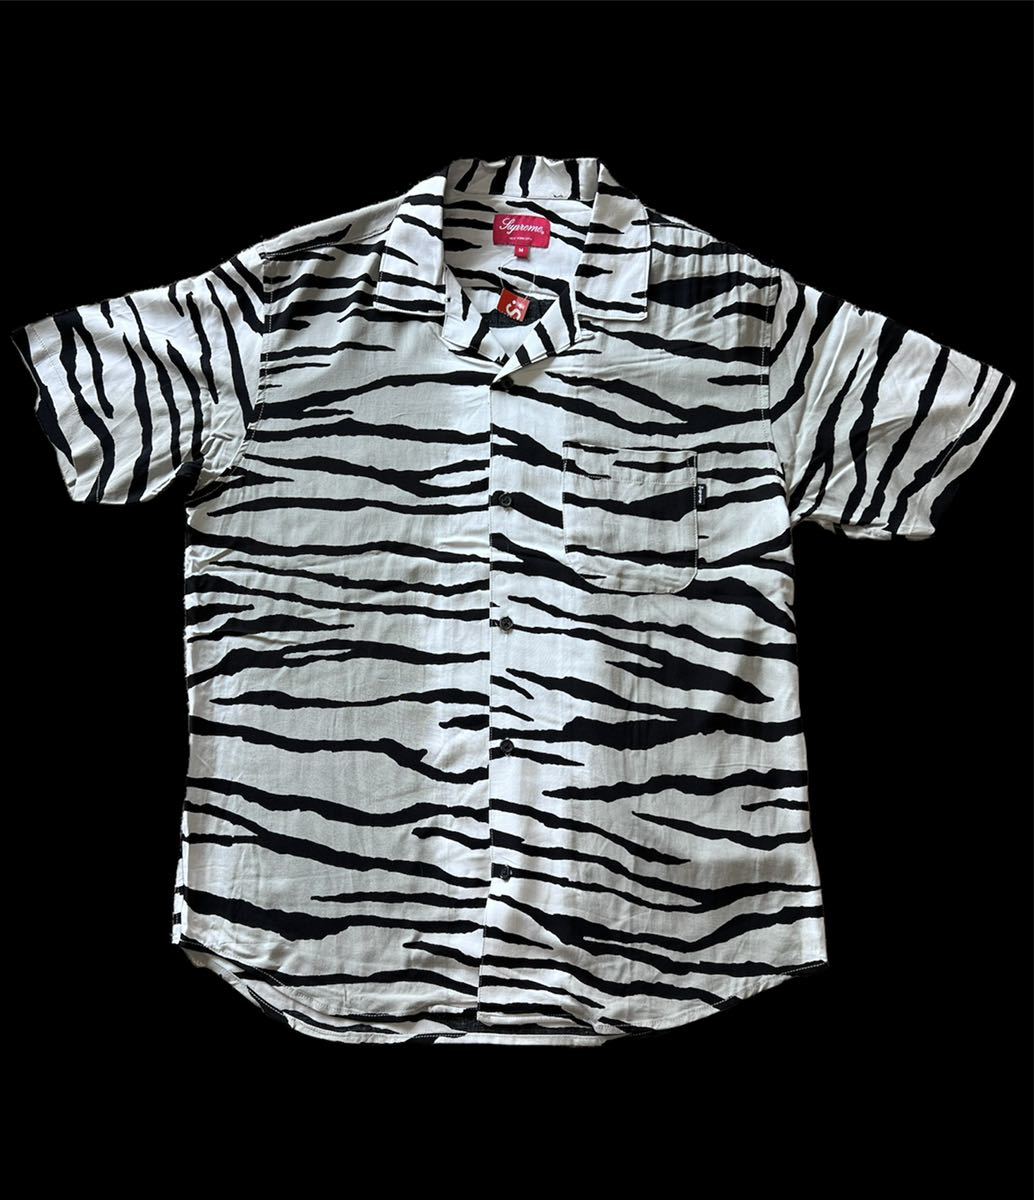 最適な材料 シュプリーム【新品タグあり】2018年春夏アイテム Supreme 18SS タイガーストライプレーヨンシャツ Shirt Rayon Stripe Tiger その他